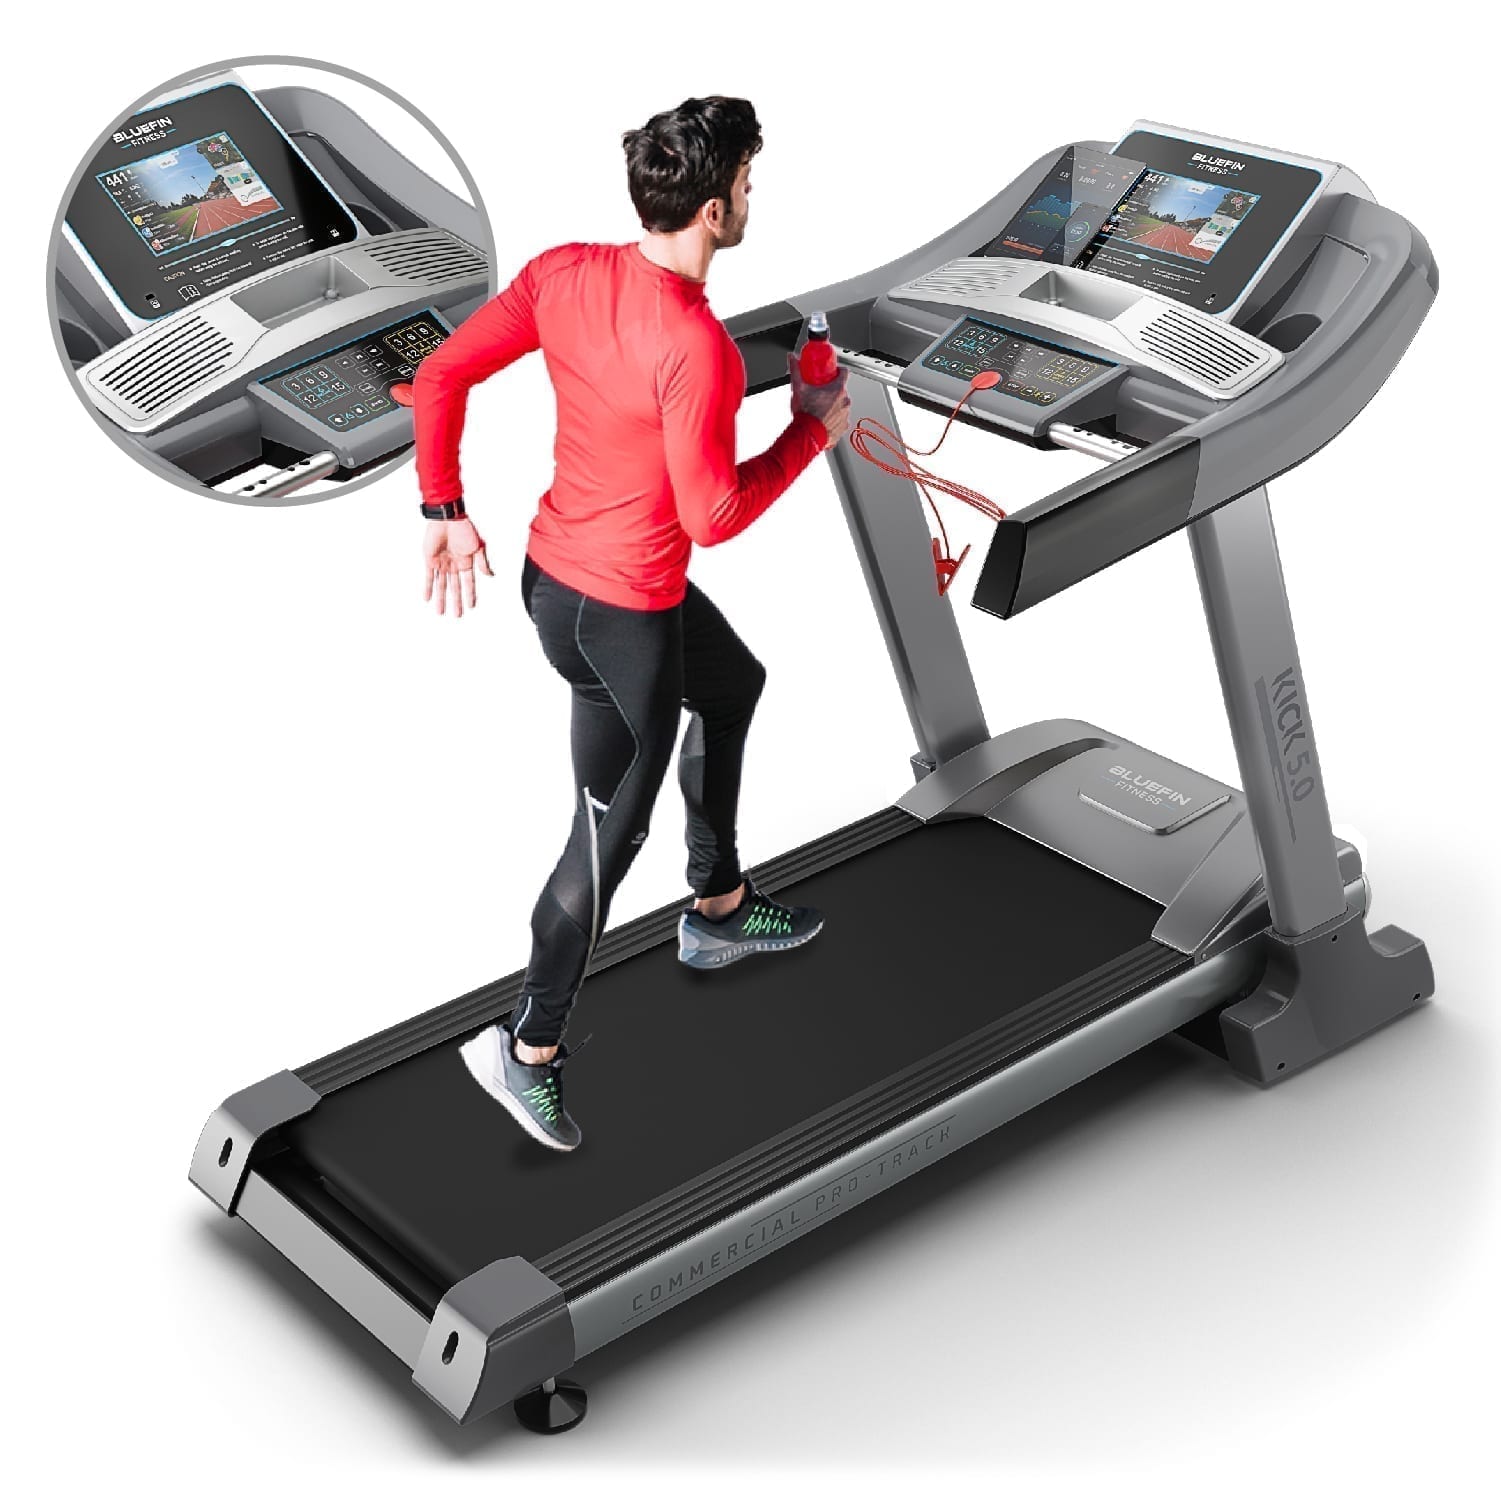 erwt daar ben ik het mee eens Ingrijpen Bluefin Fitness KICK 5.0 Folding High Speed Treadmill